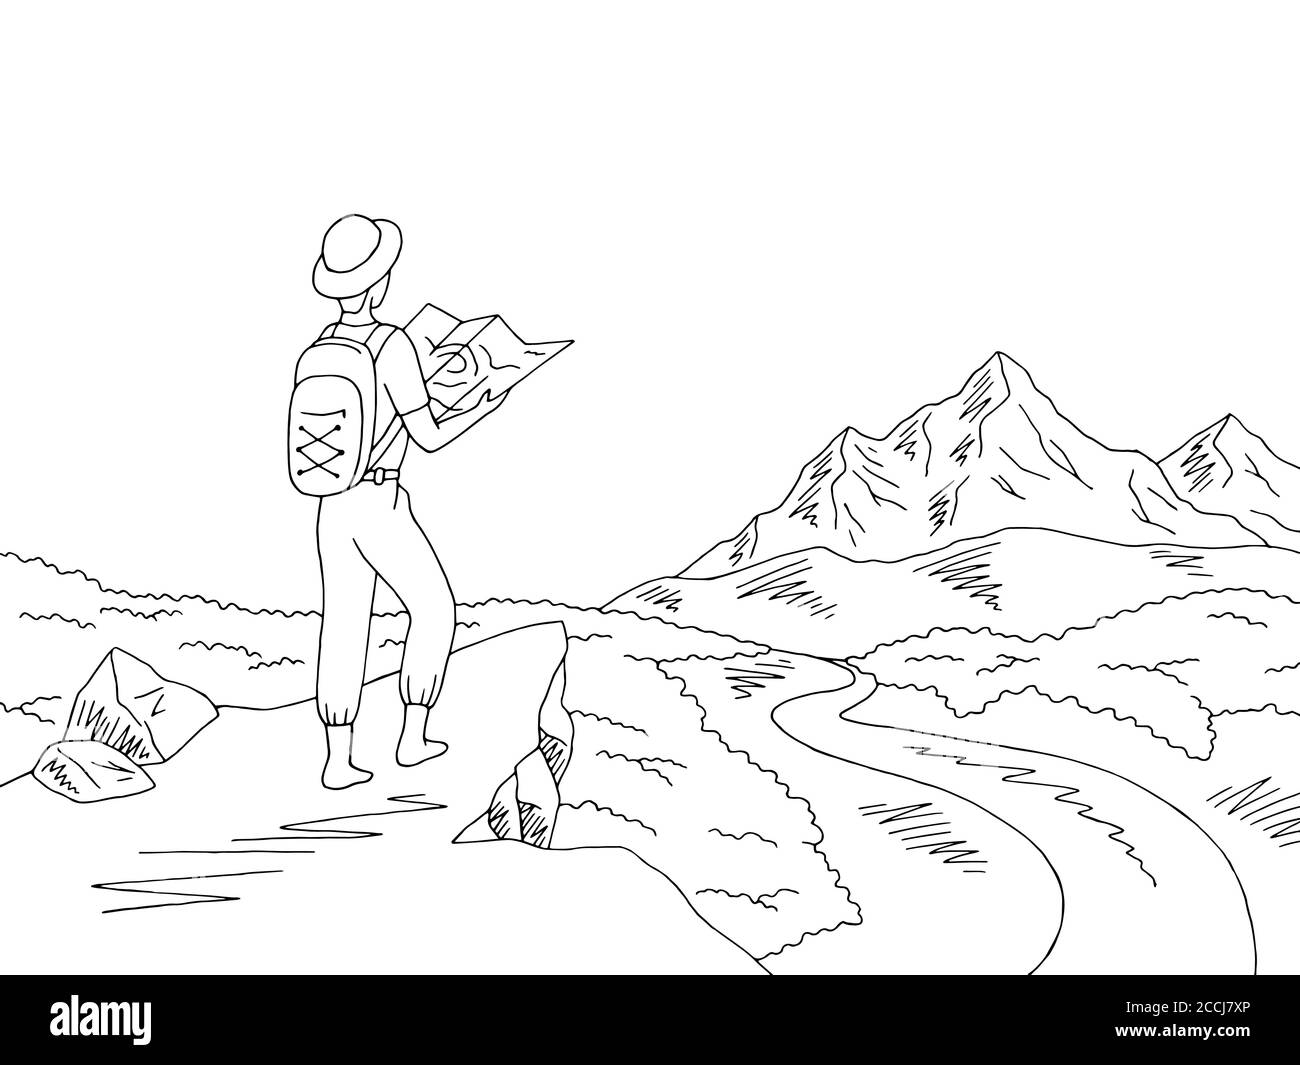 Le voyageur regarde la carte. Mountain River graphique noir blanc paysage dessin illustration vecteur Illustration de Vecteur